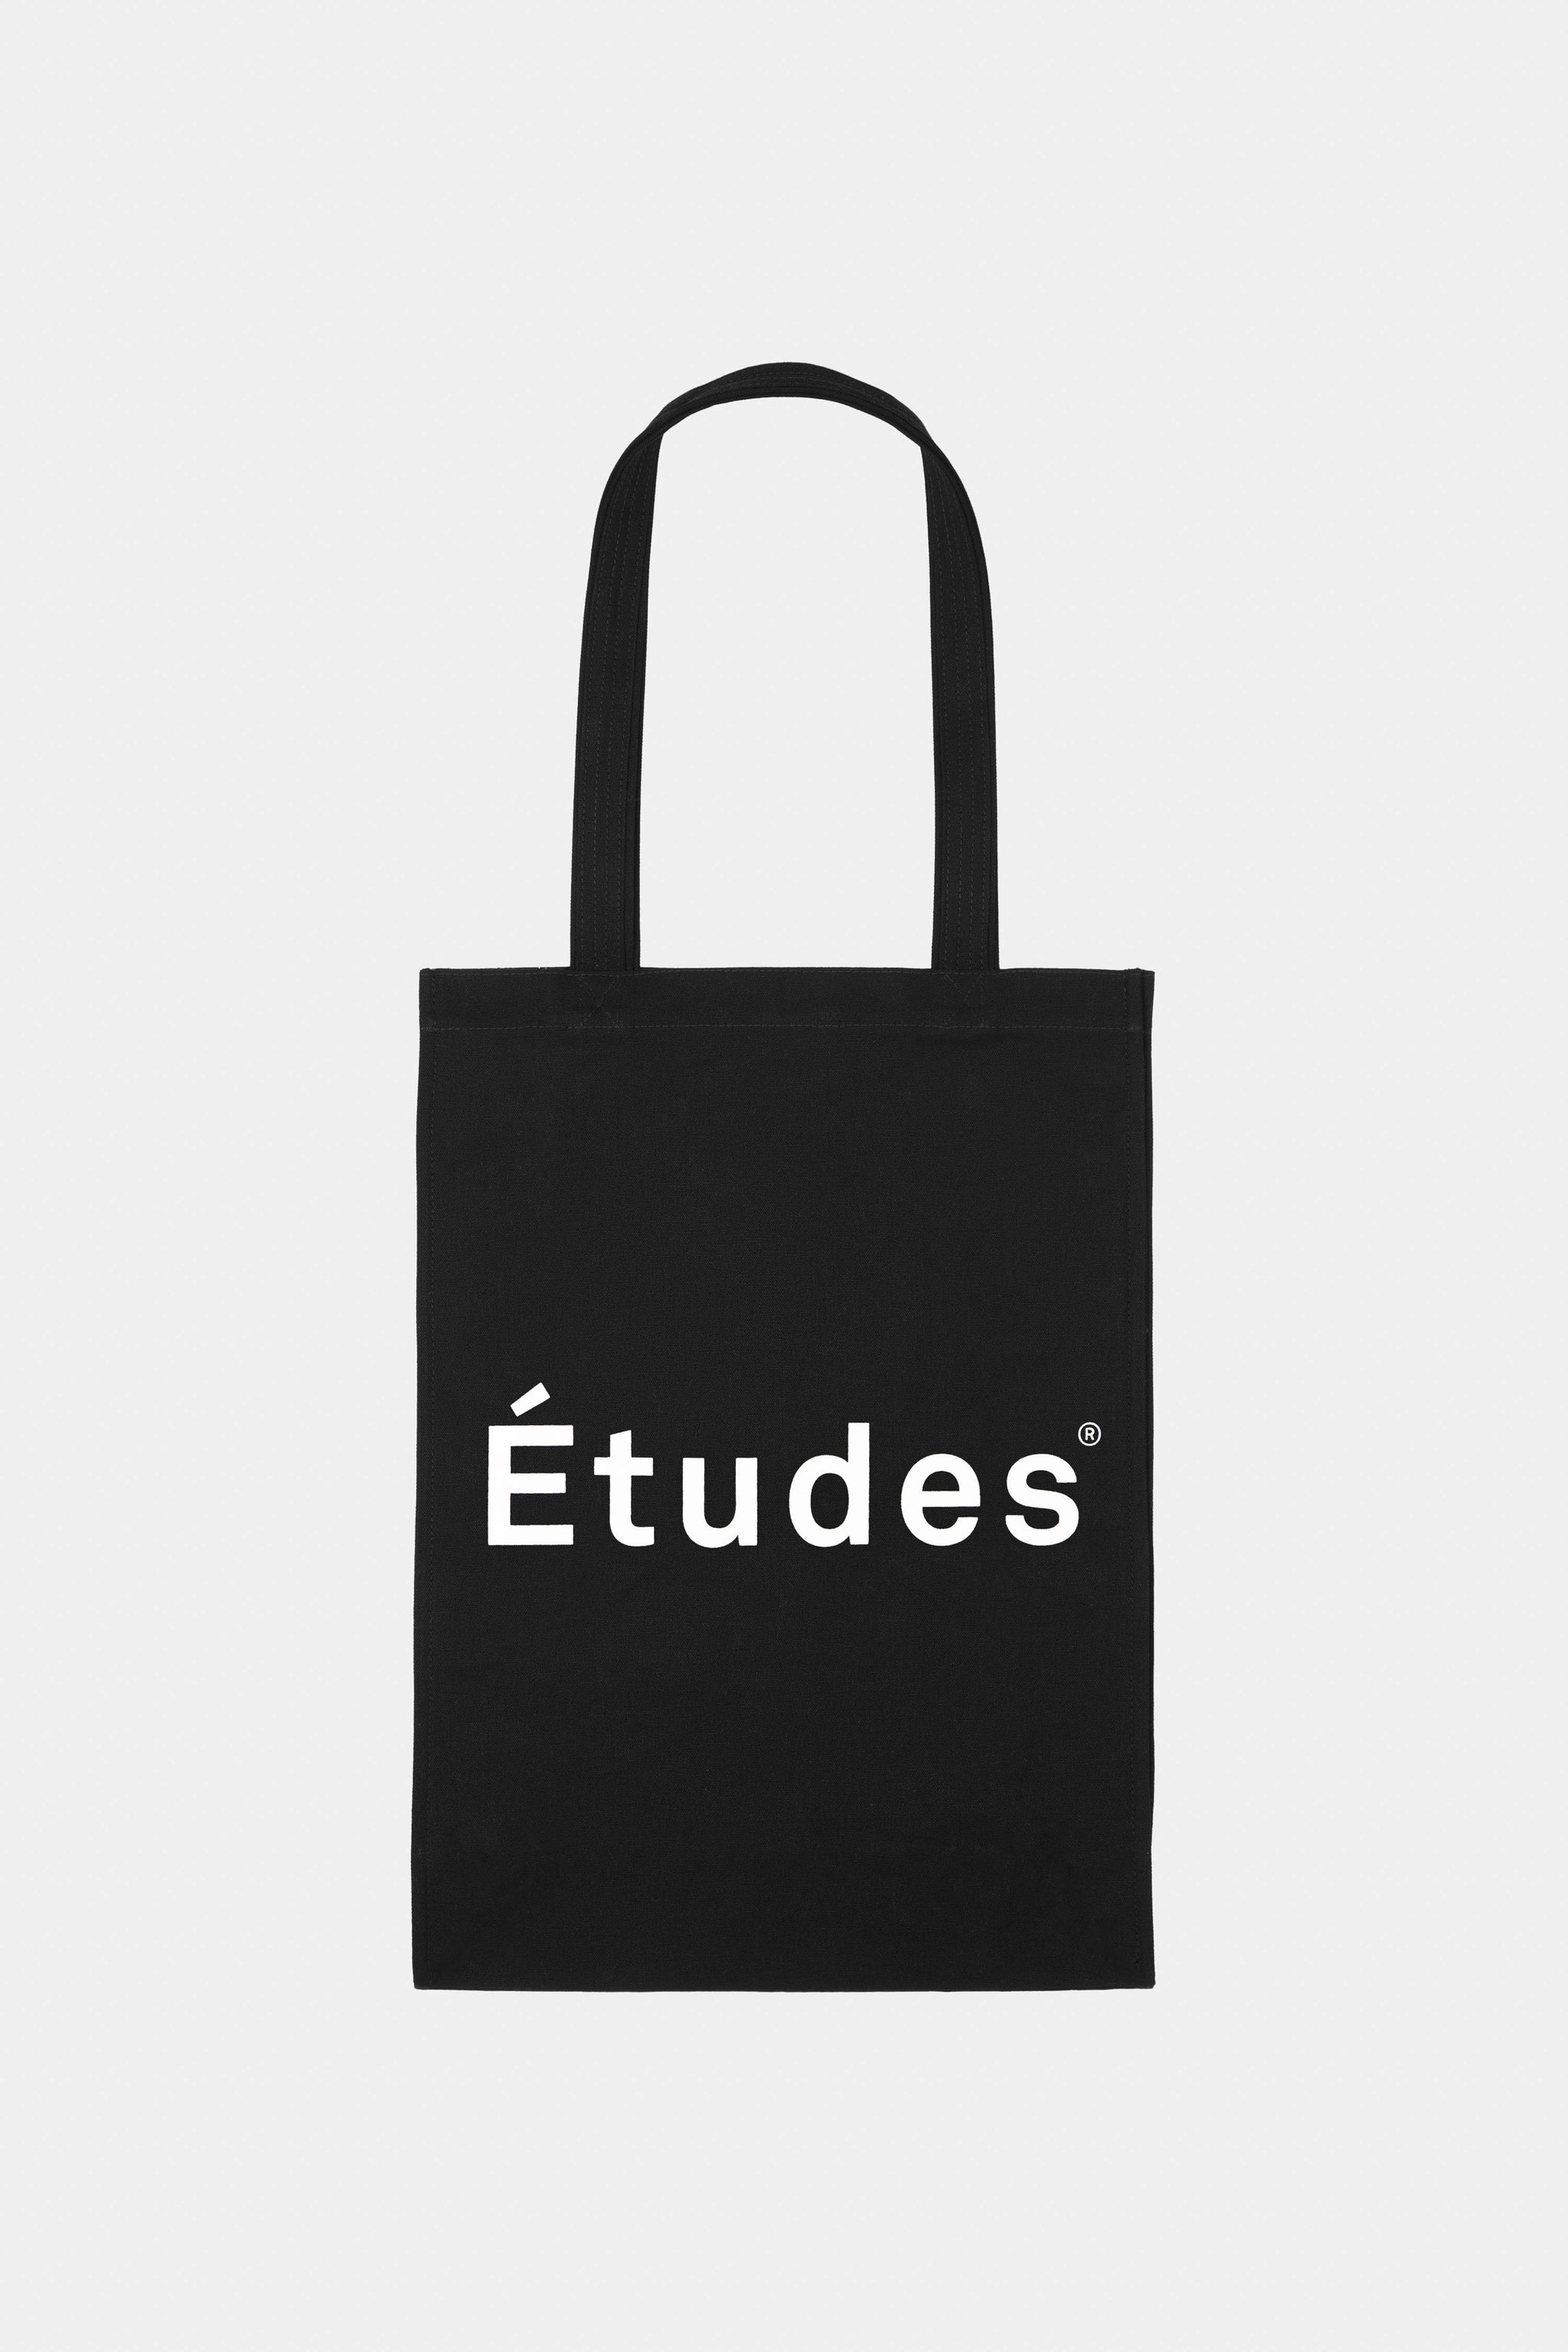 Études NOVEMBER ETUDES BLACK Bag 1 